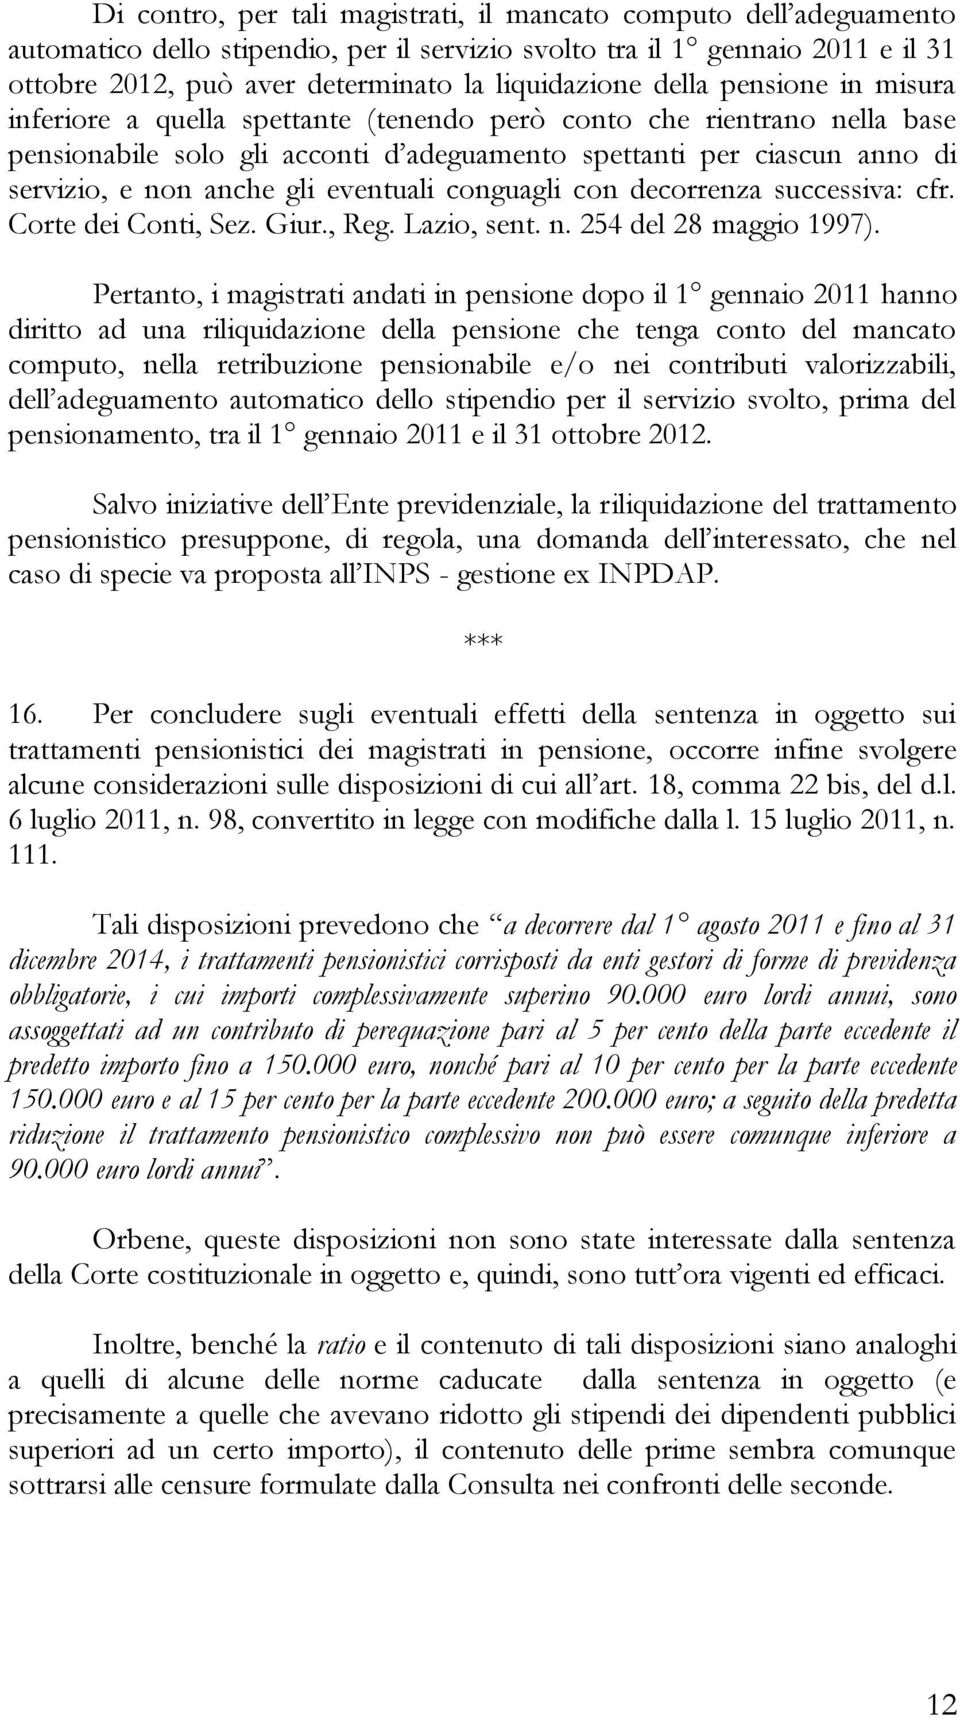 eventuali conguagli con decorrenza successiva: cfr. Corte dei Conti, Sez. Giur., Reg. Lazio, sent. n. 254 del 28 maggio 1997).